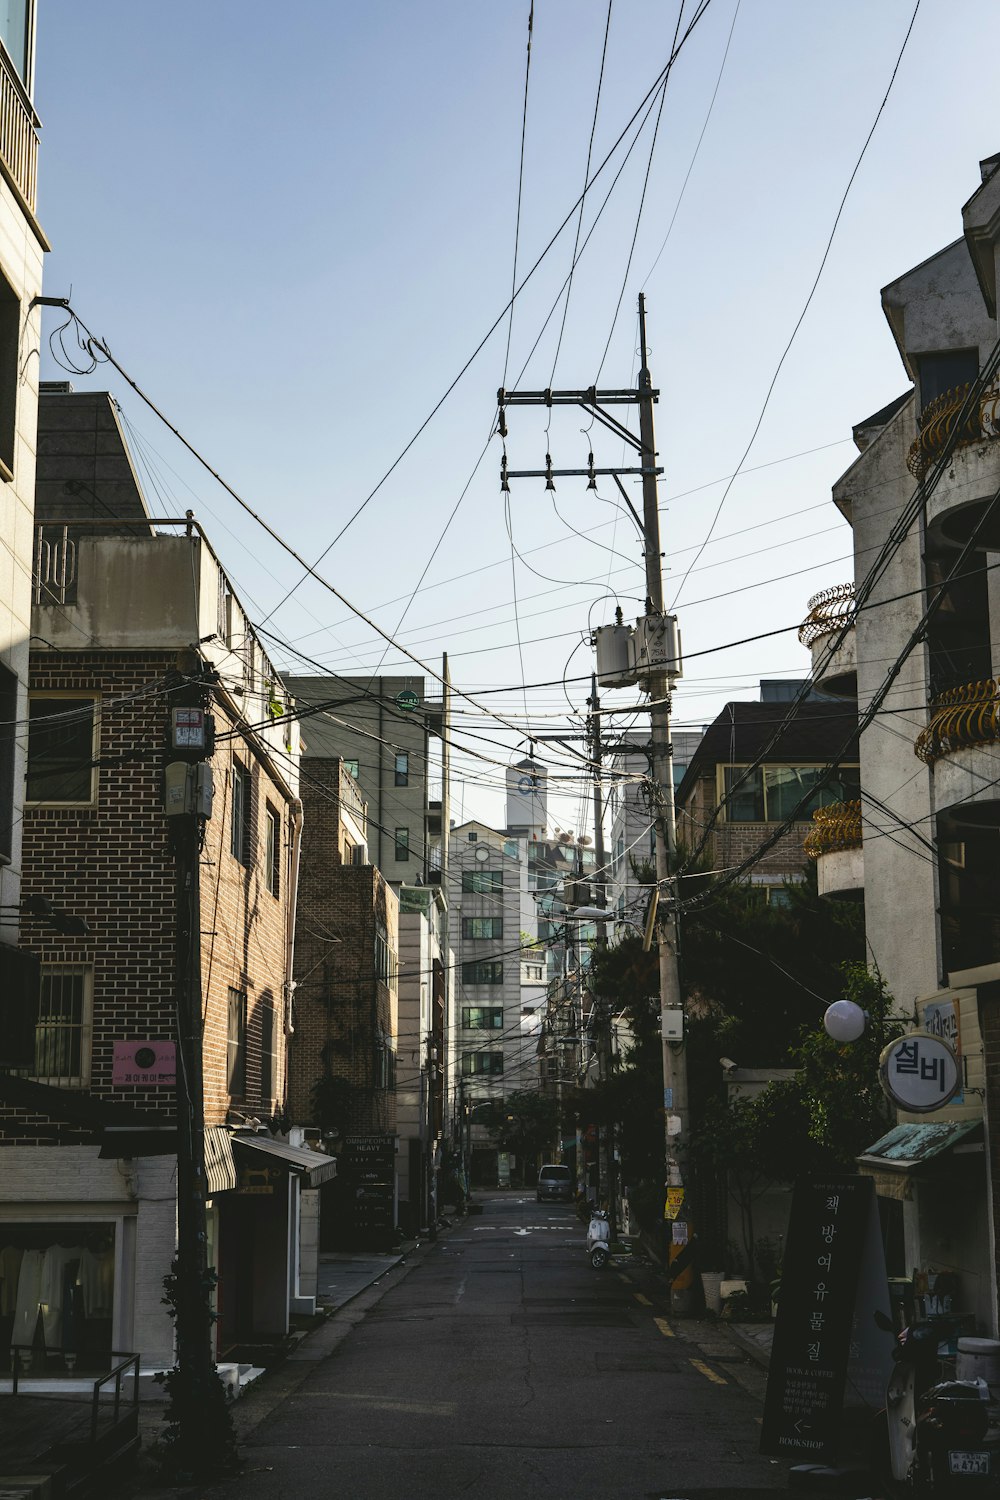 Une rue de la ville bordée de bâtiments et de lignes électriques